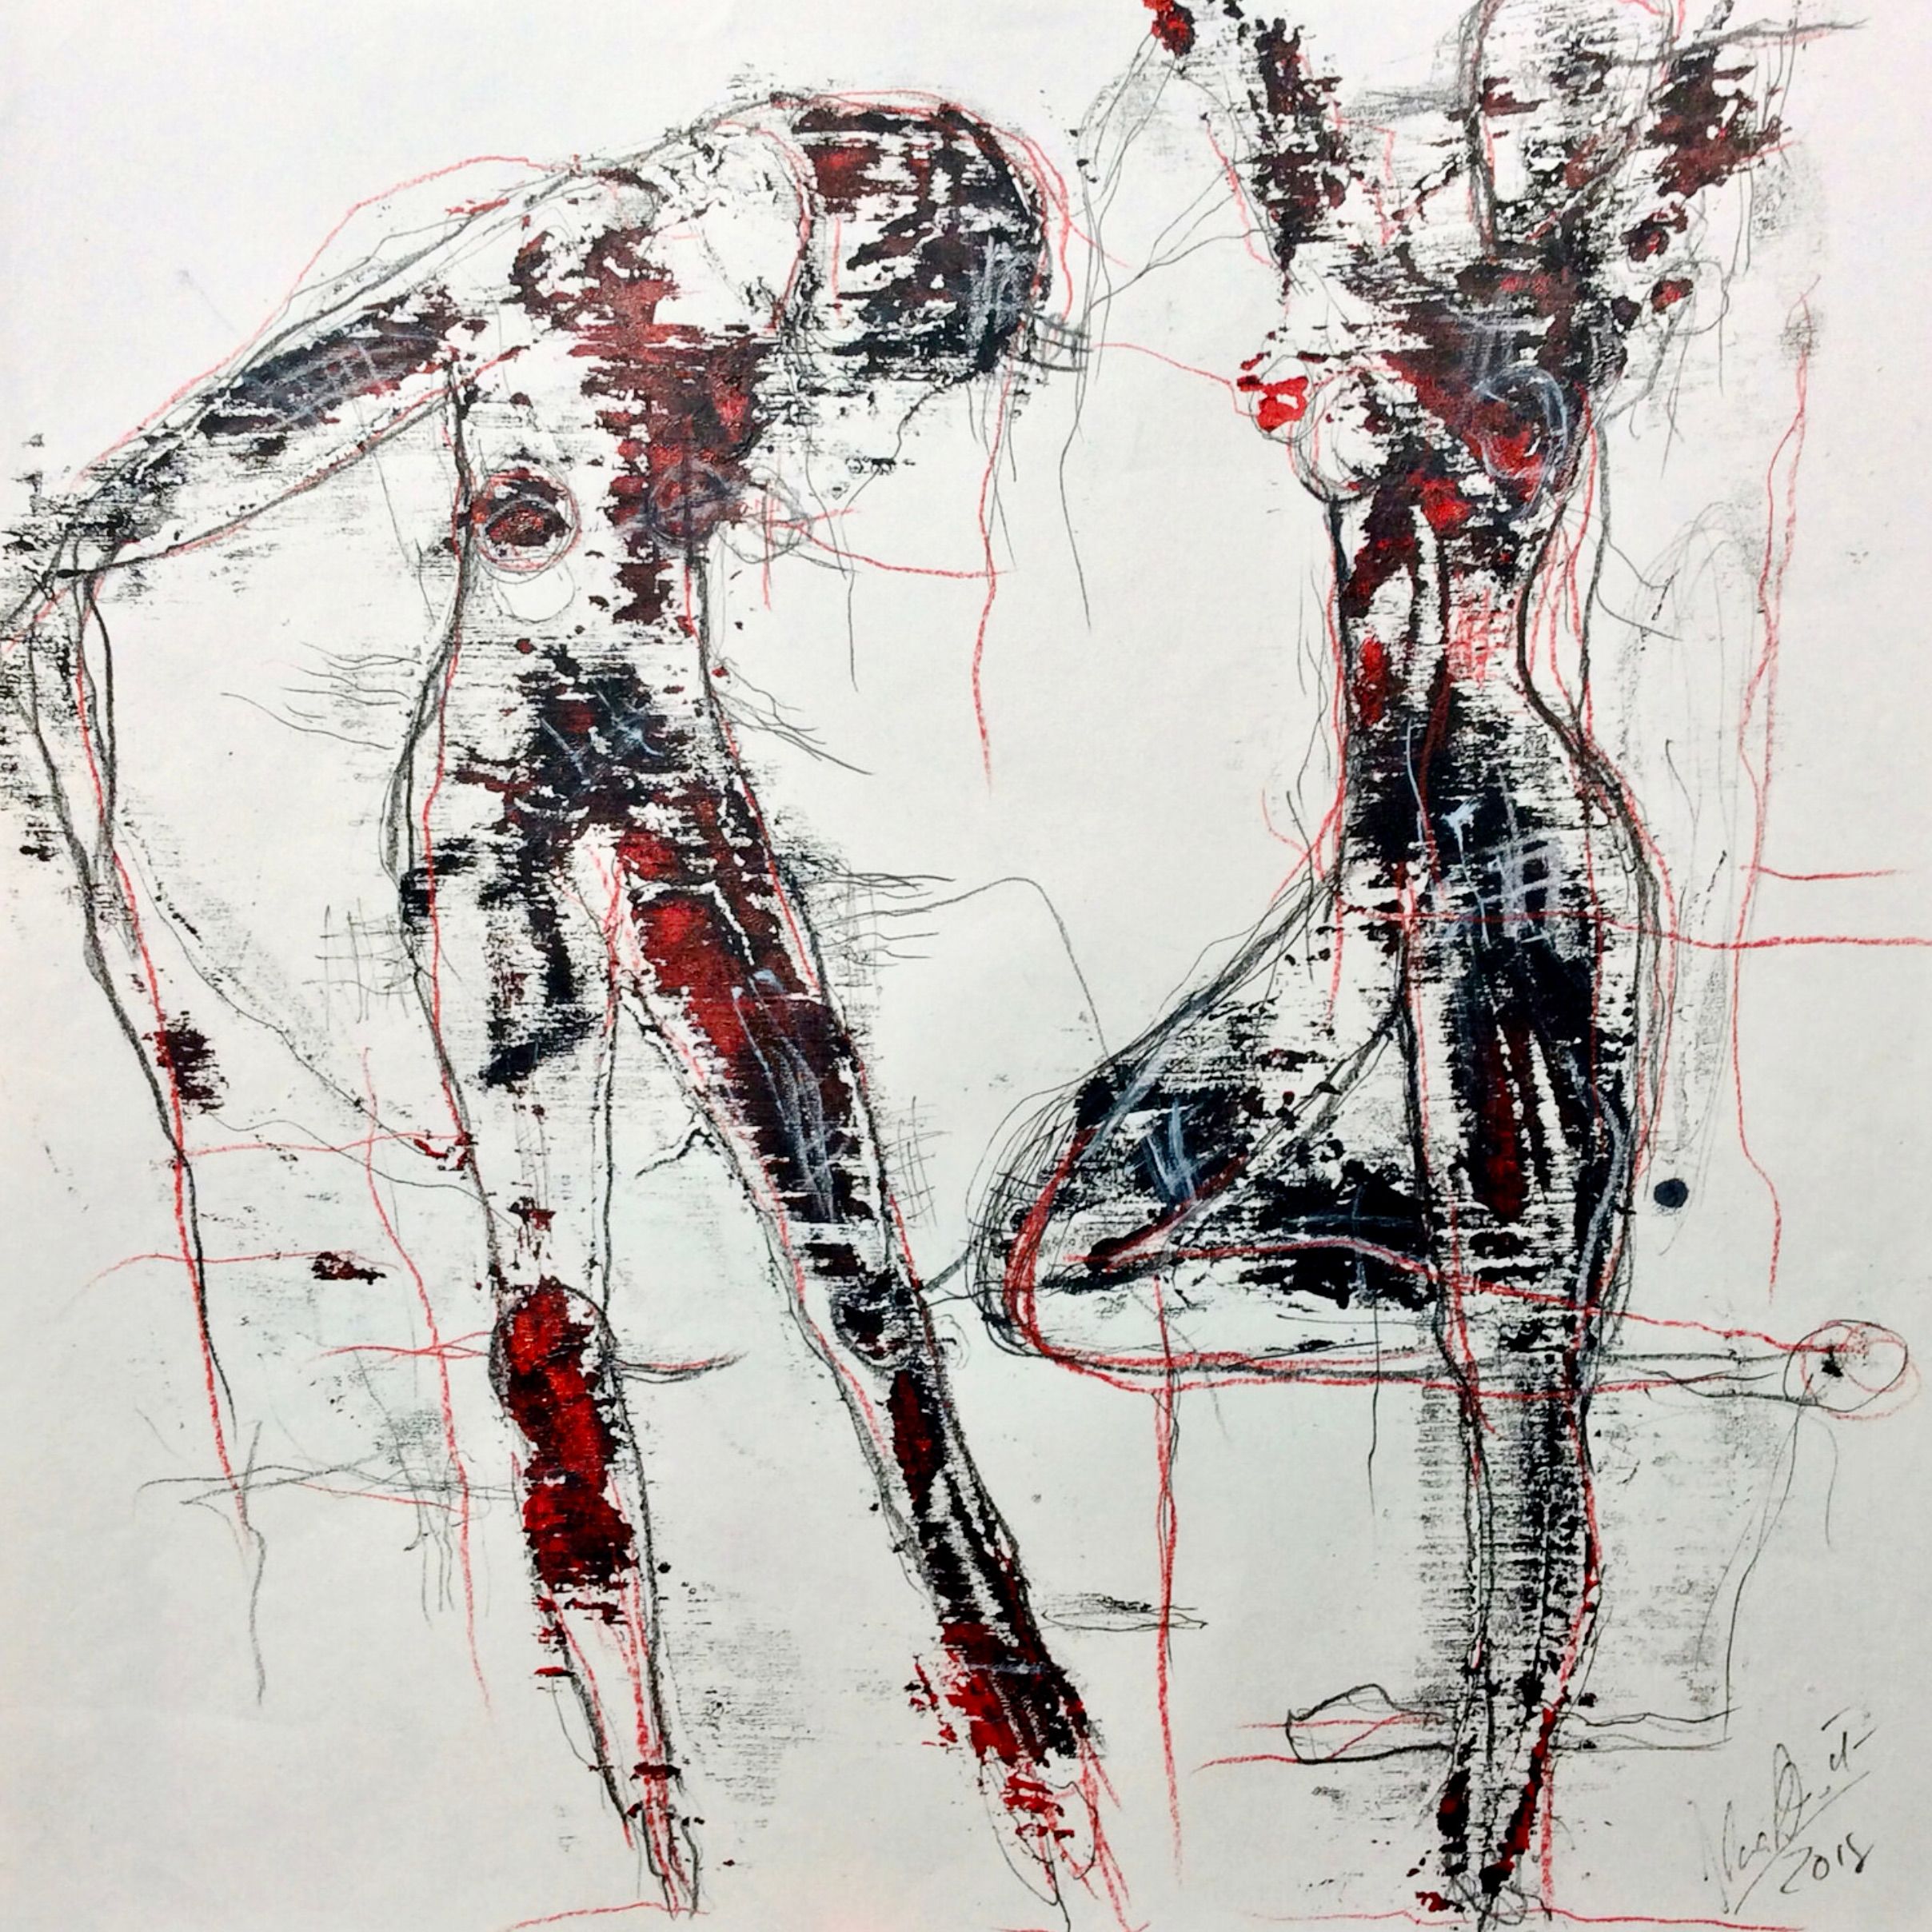 Le portrait/dessin expressif semi-abstrait "Monoprint Nr. 20" d'Ilona Schmidt montre 2 corps de femmes nues. Les couleurs noir, blanc, avec des touches de rouge dominent dans ce tableau.